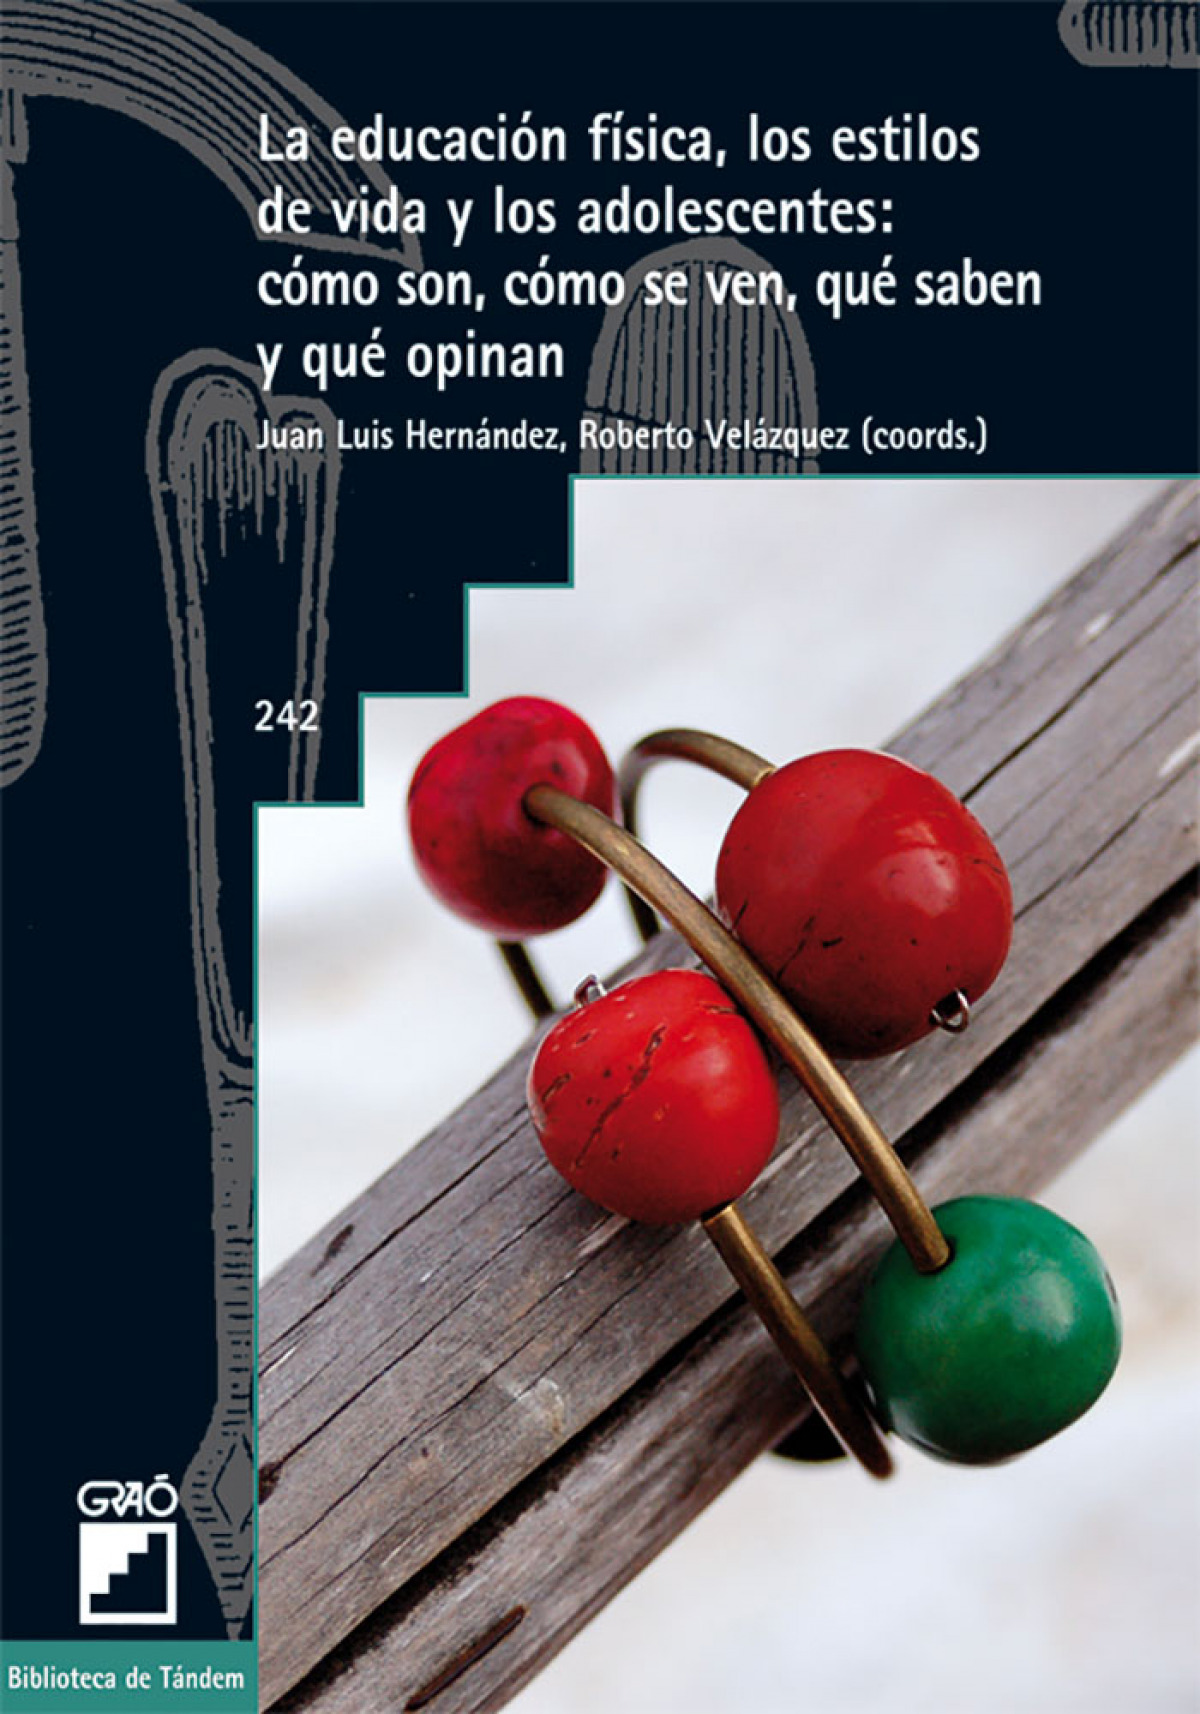 Educacion fisica, los estilos de vida y los adolescentes,la. - Juan Luis Hernandez (coord.), Roberto Ve